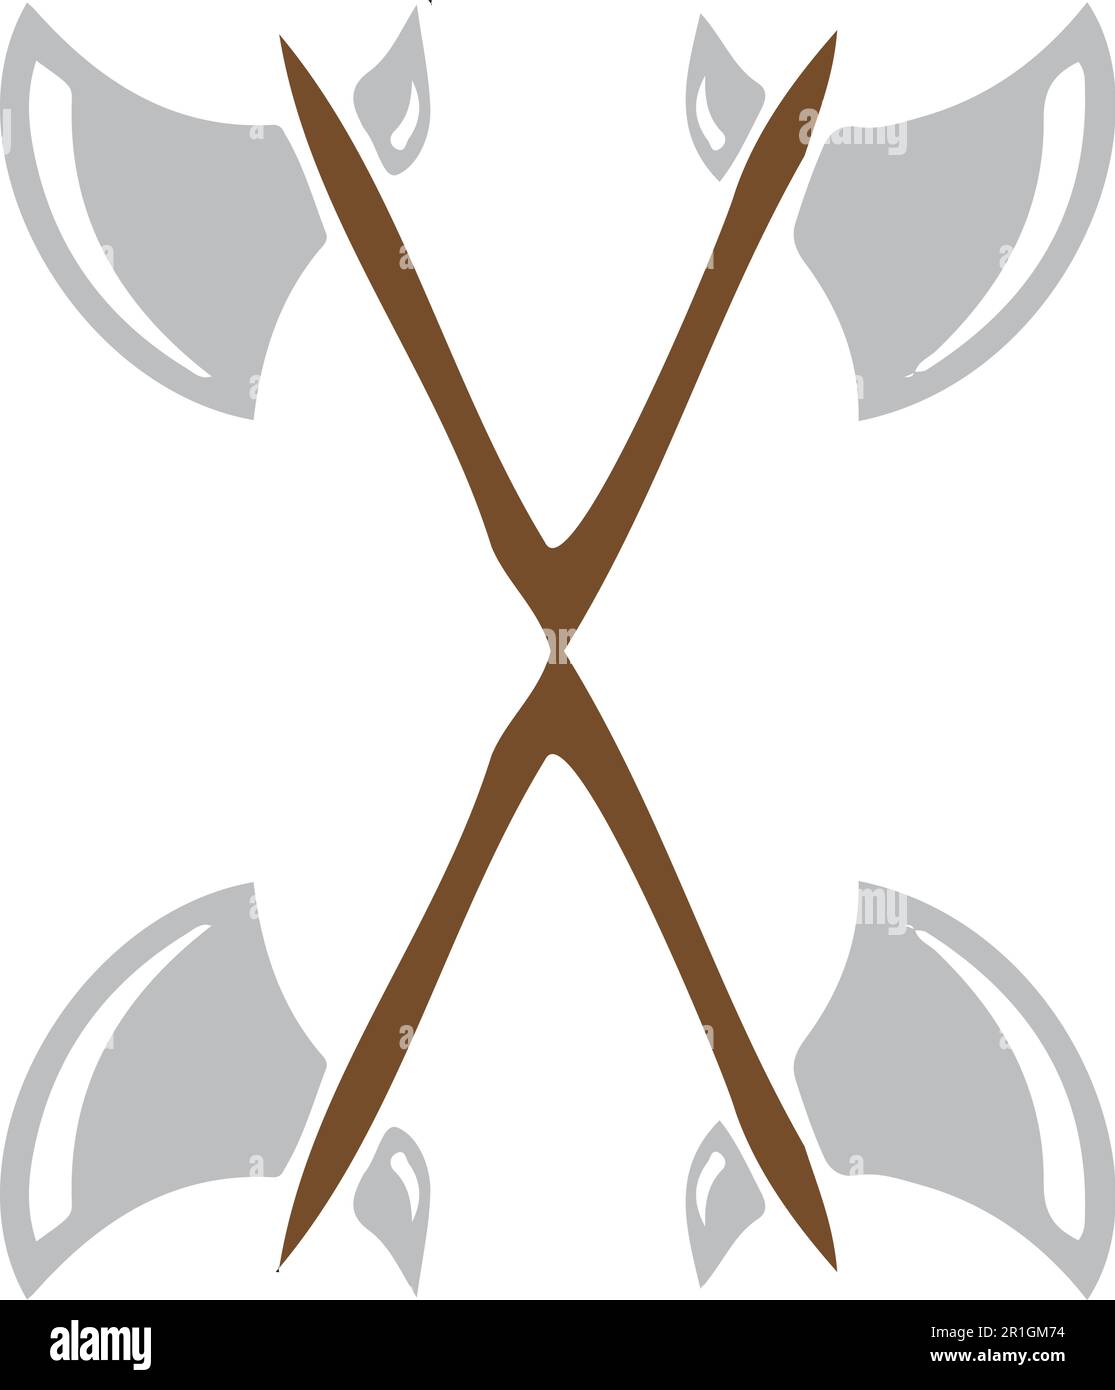 Die Axes Illustration Vikings ist eine fesselnde Vektordatei, die die Essenz der Kultur und Stärke der Wikinger zeigt. Diese hochwertige Vorlagenfunktion Stock Vektor